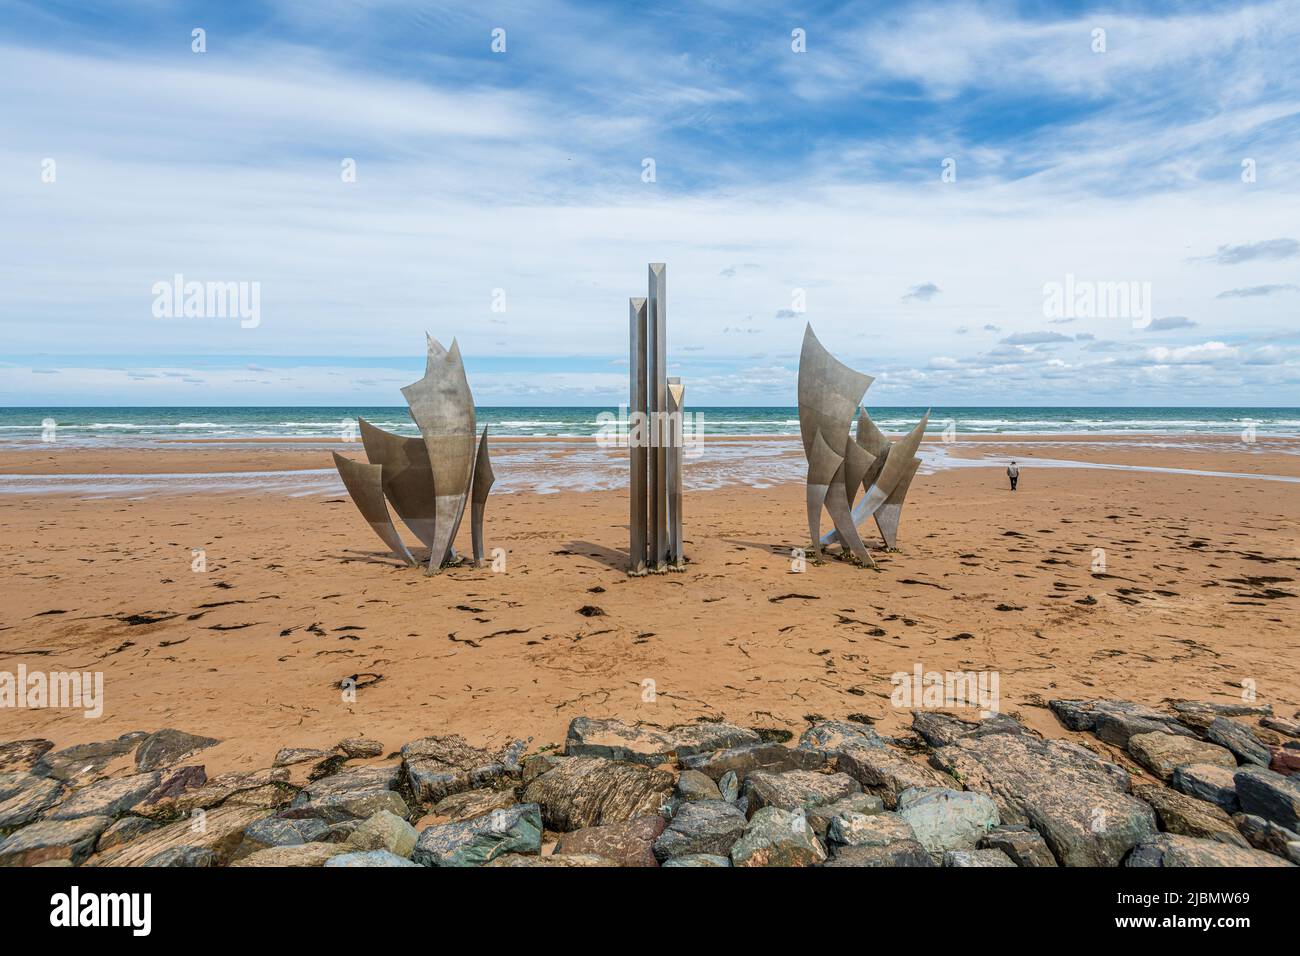 Monument Les Braves de Saint-Laurent-sur-Mer. Erigé sur le sable de la plage d’Omaha Beach, en hommage aux 35.000 soldats alliés qui débarquèrent en c Stock Photo